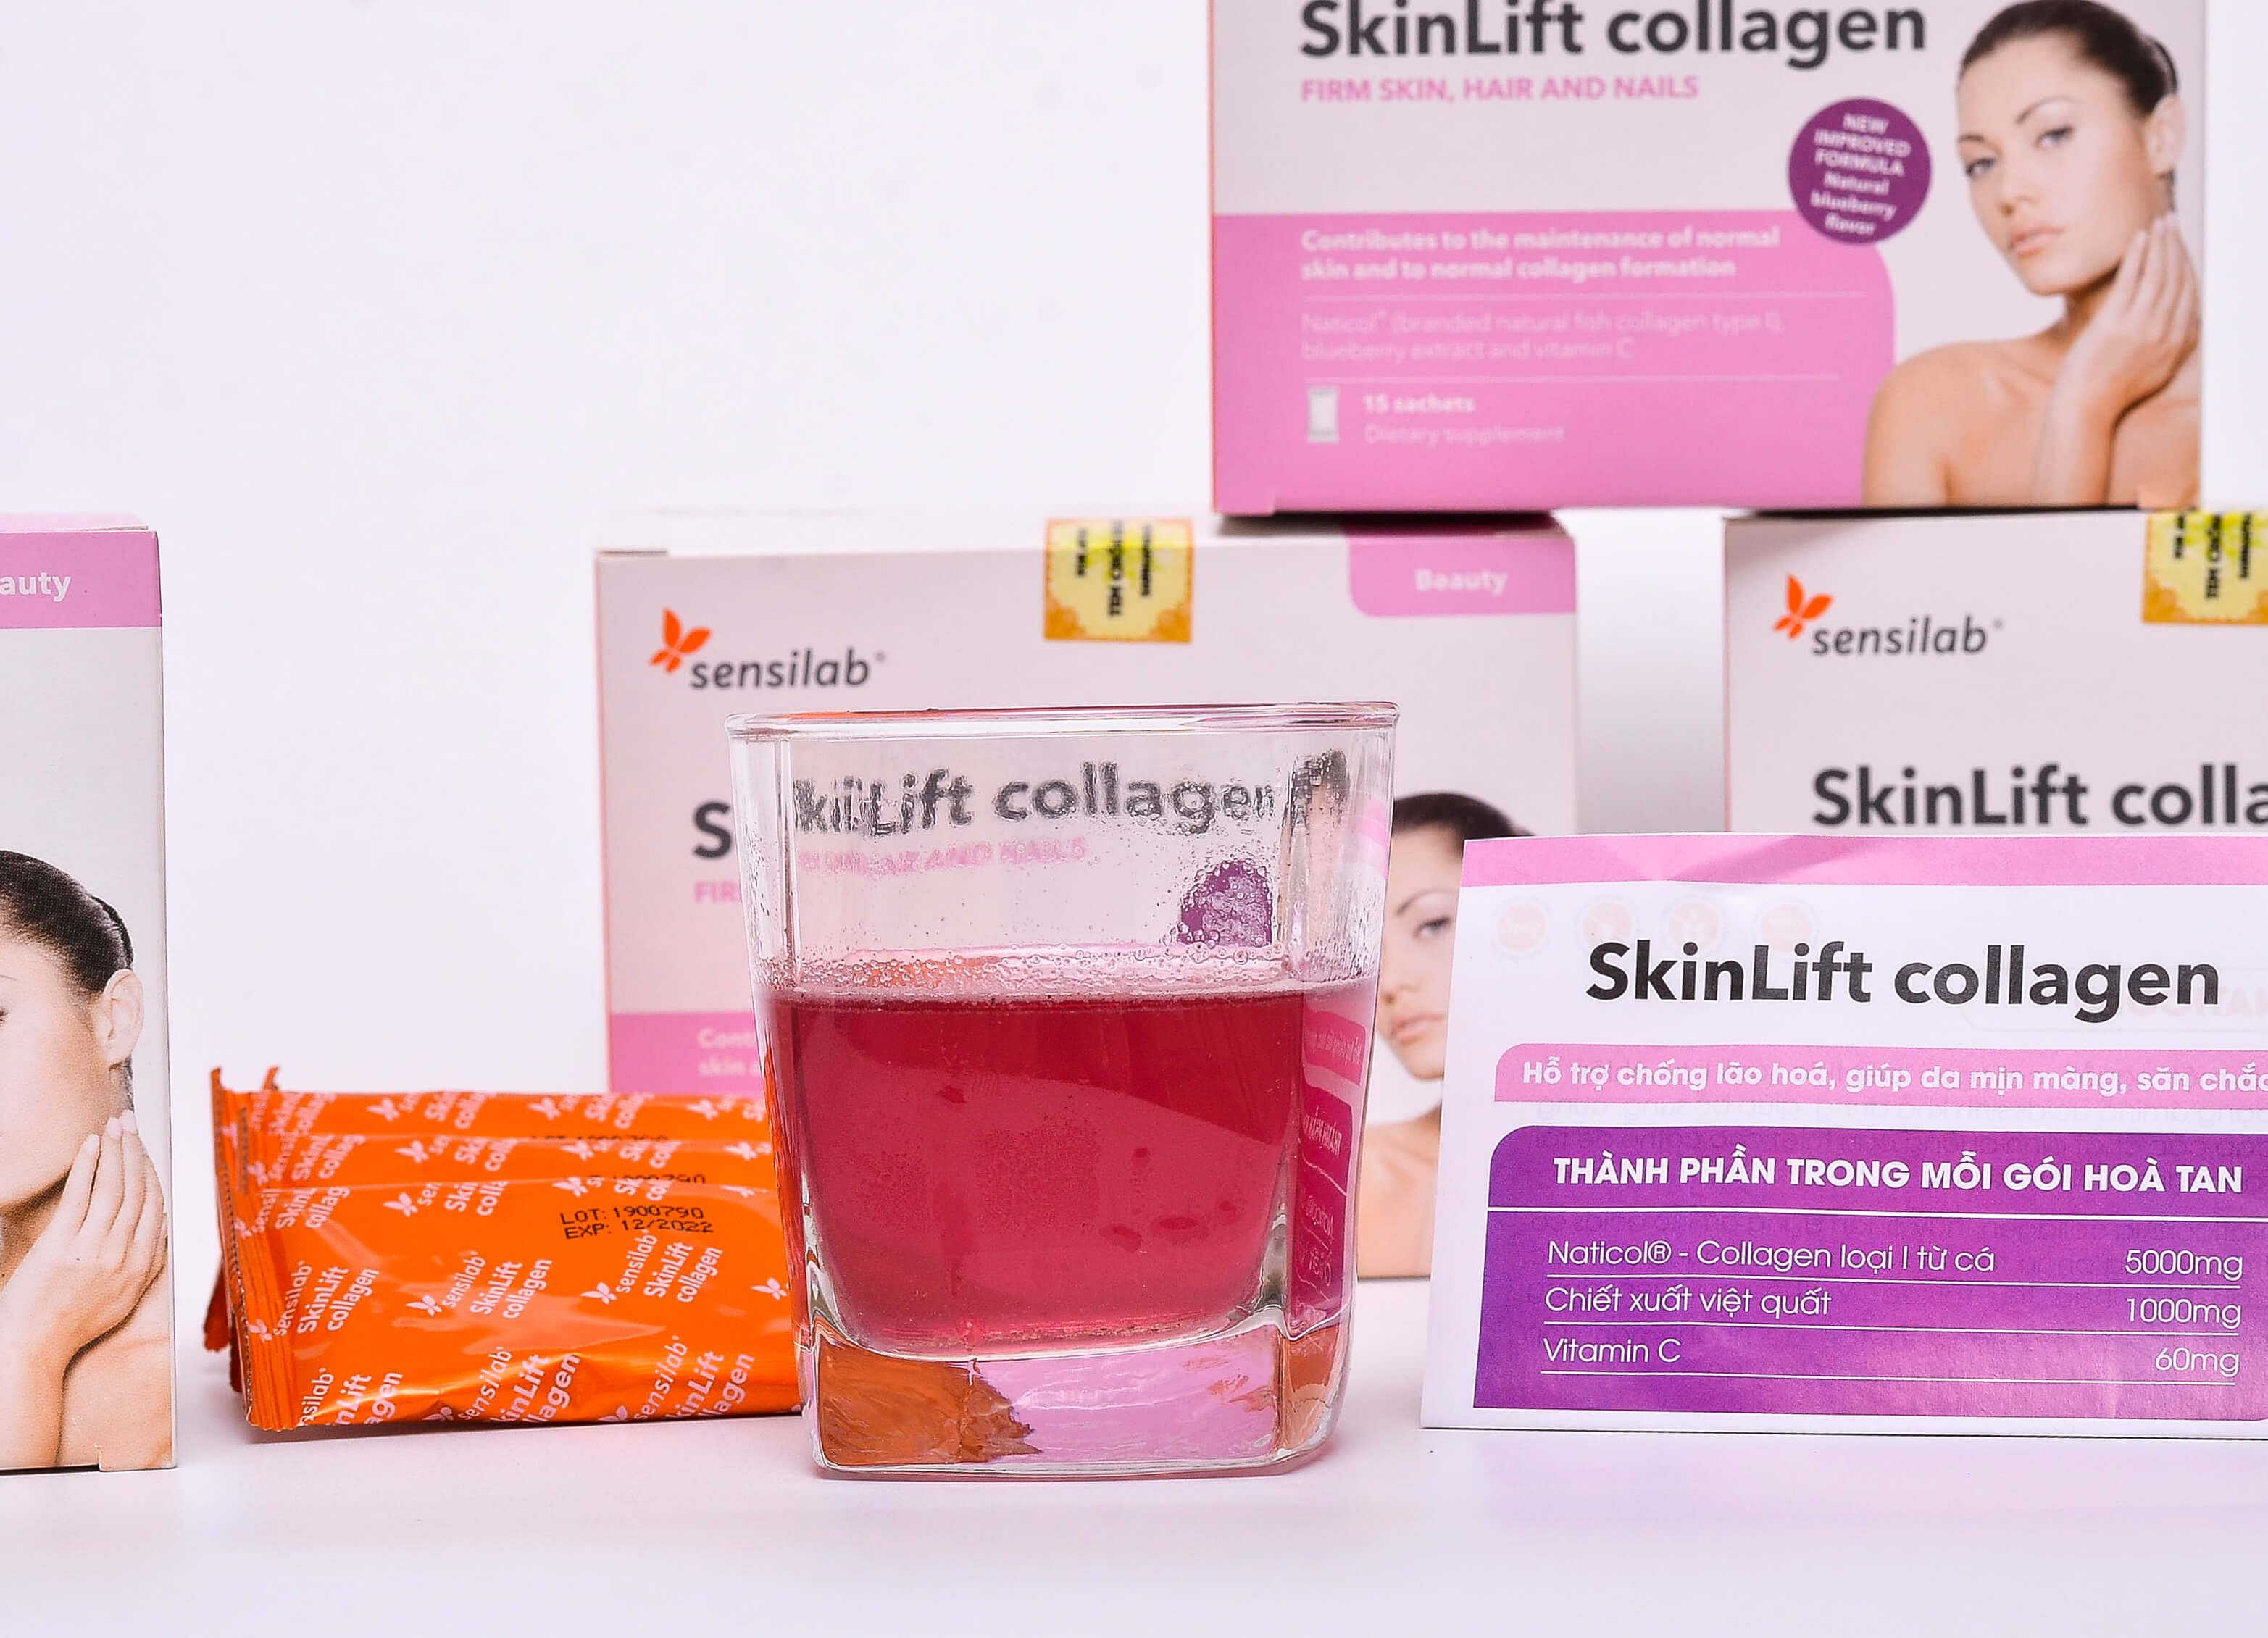  Skinlift Collagen chính hãng từ Slovakia